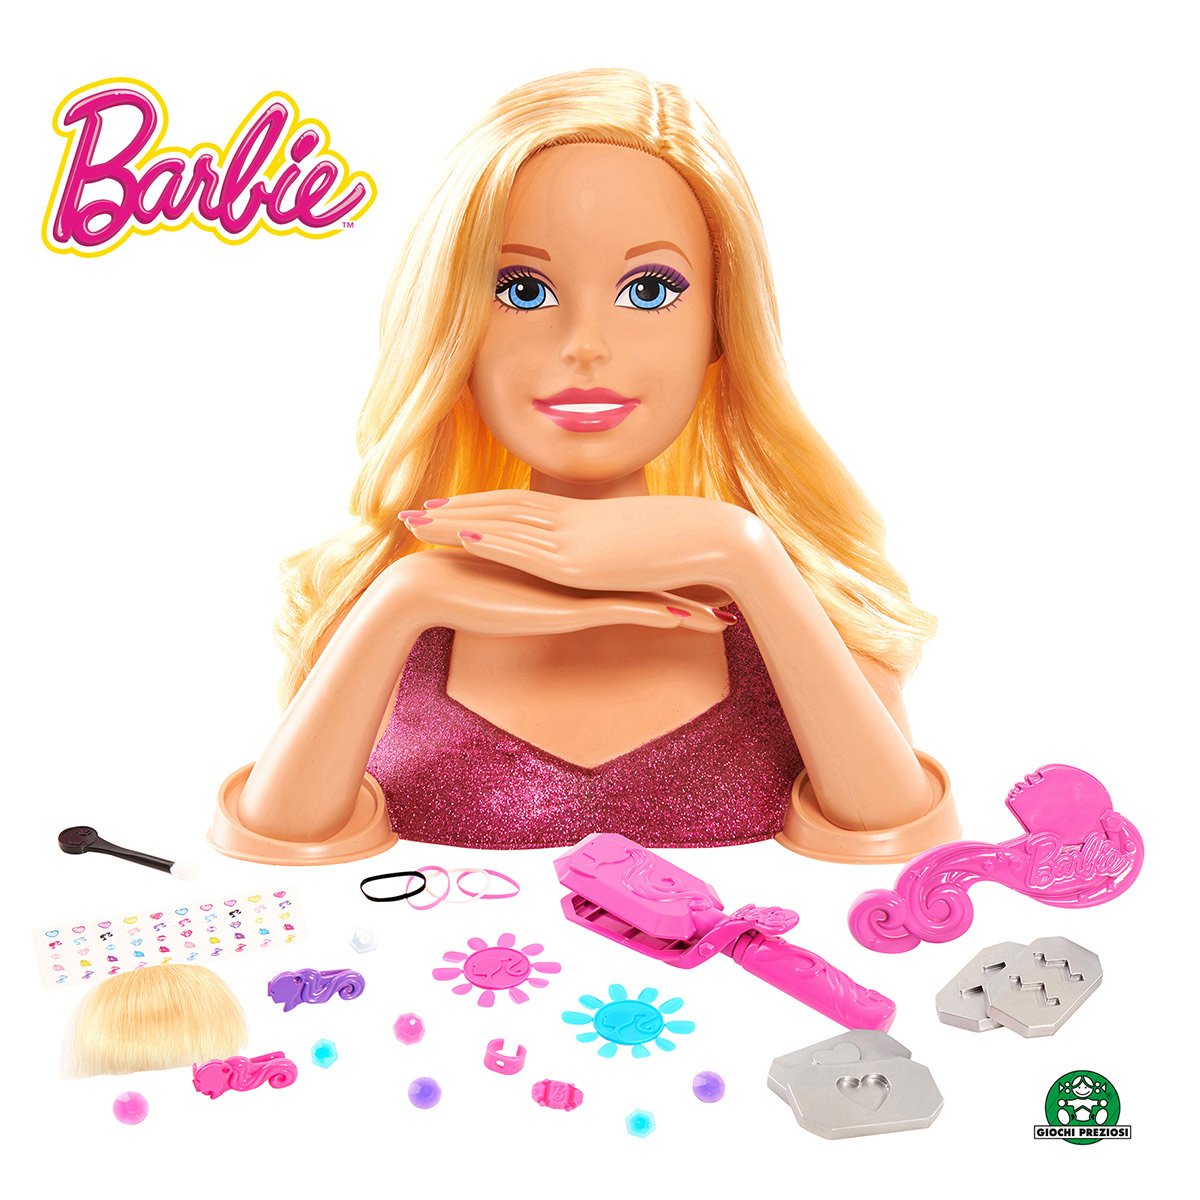 Barbie coiffeuse - Barbie